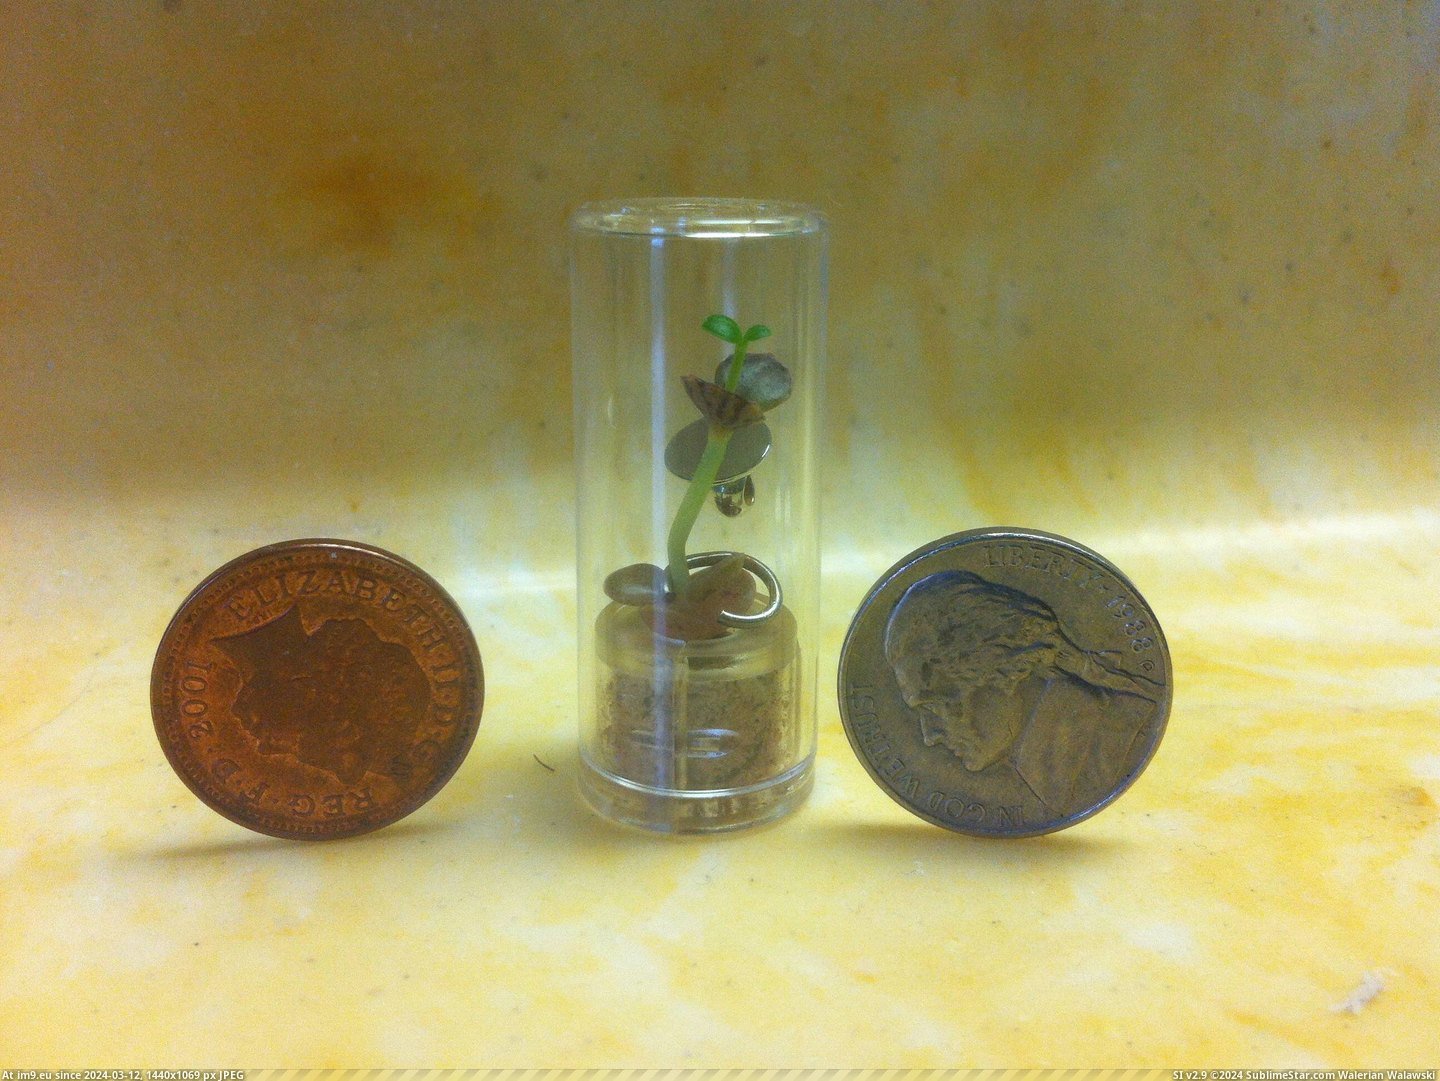 #Tiny #Mail #Tobacco #Company #Plant [Mildlyinteresting] A tobacco company sent me a tiny plant in the mail Pic. (Bild von album My r/MILDLYINTERESTING favs))